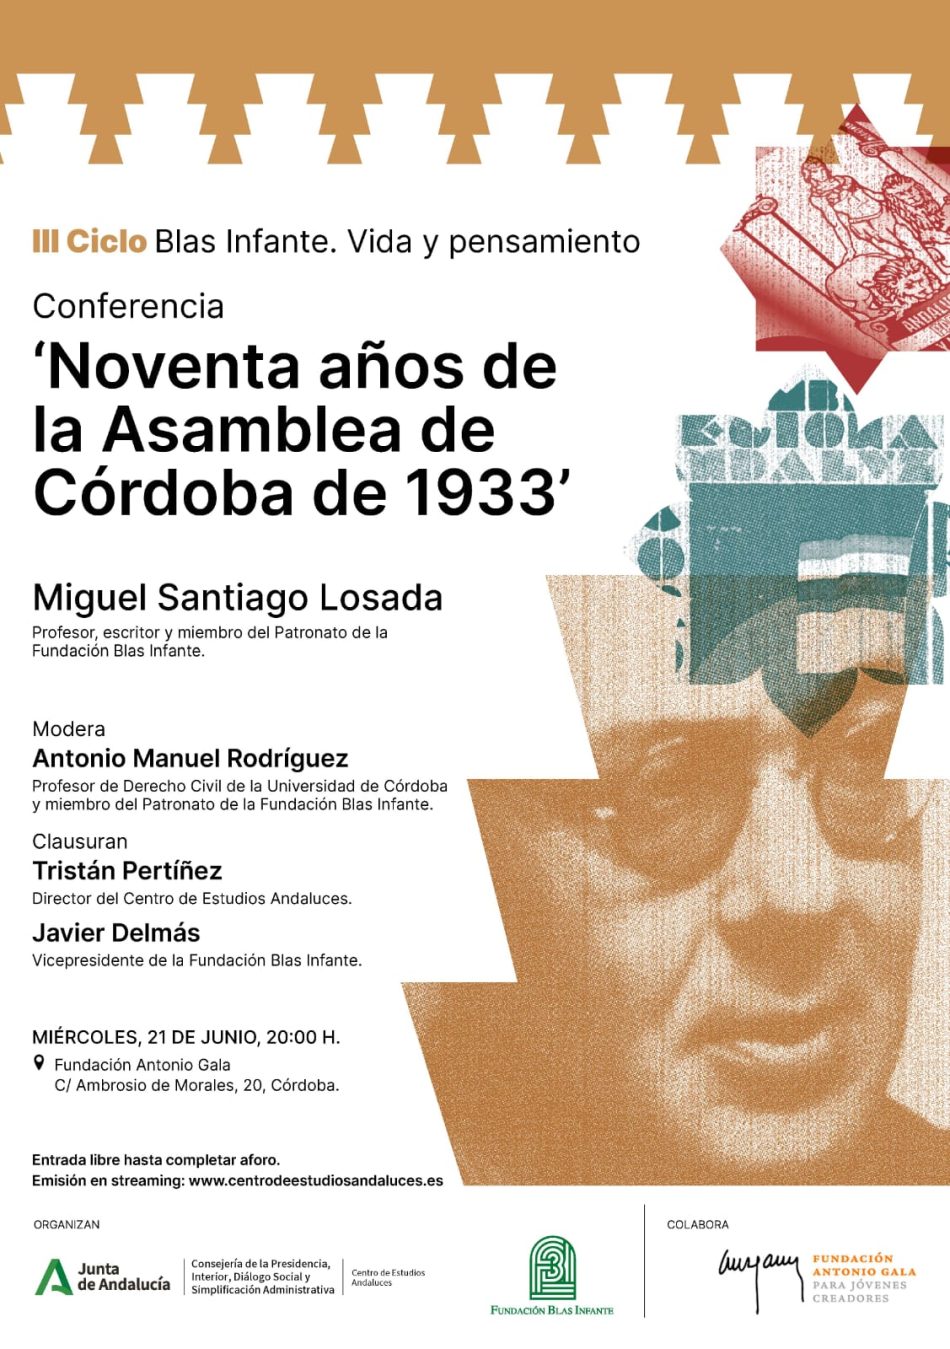 Conferencia ‘Noventa años de la Asamblea de Córdoba de 1933’. Ciclo Blas Infante, vida y pensamiento